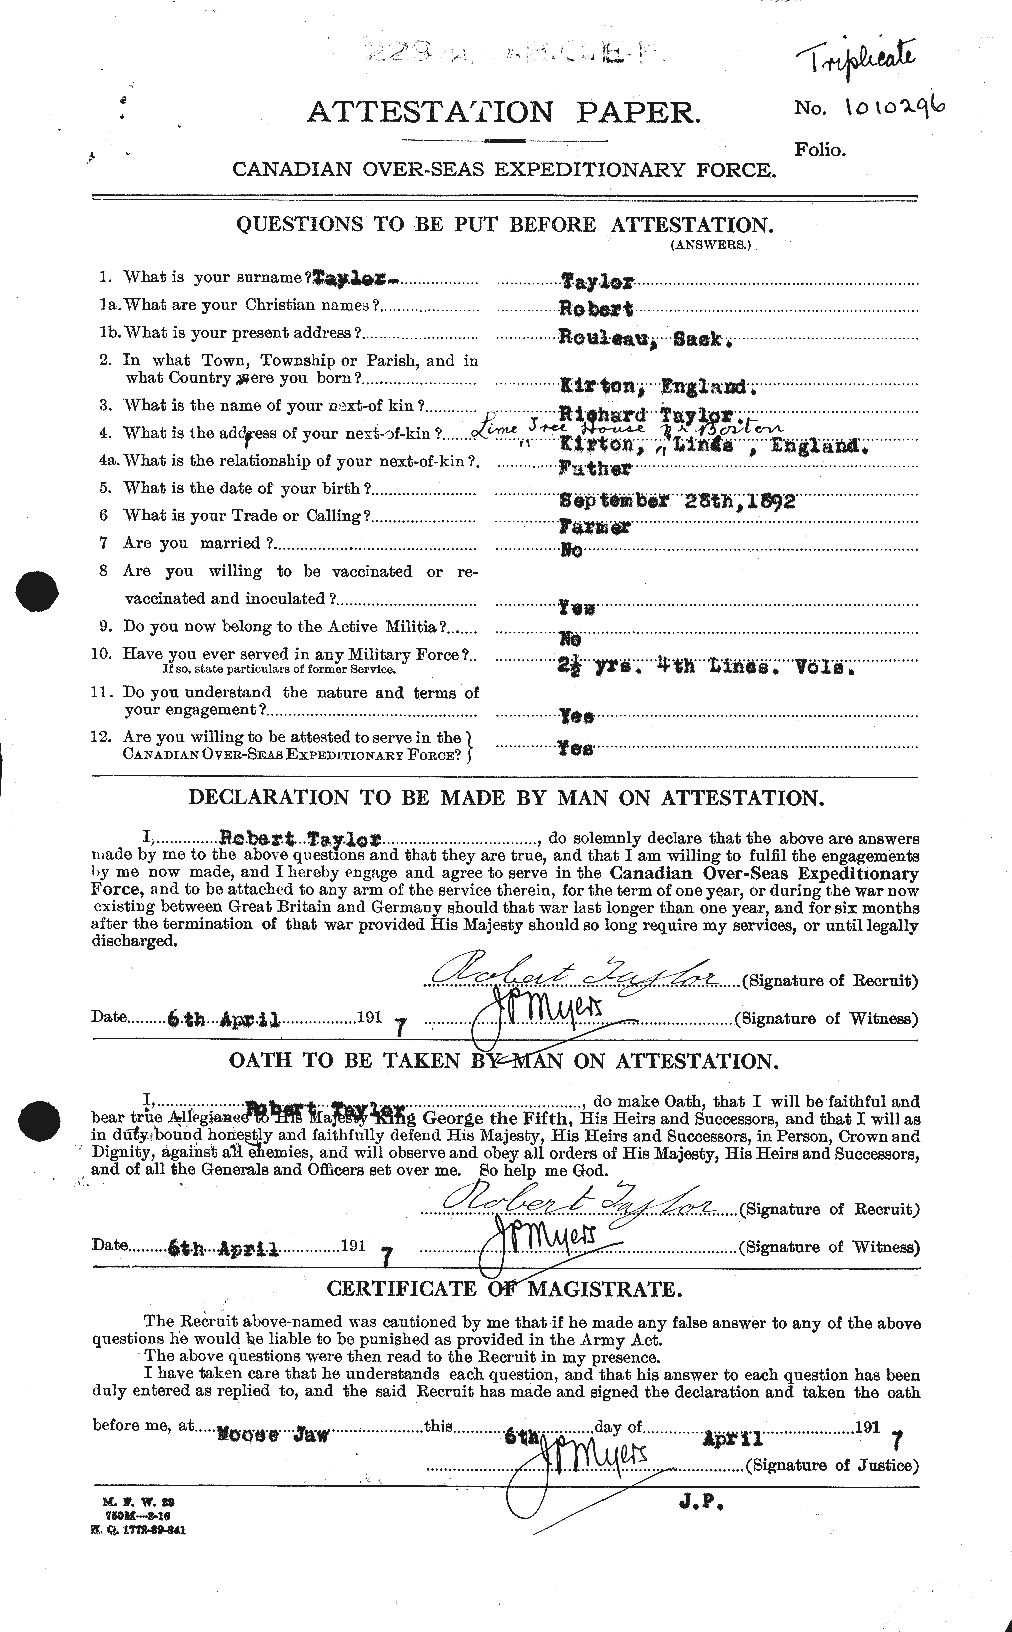 Dossiers du Personnel de la Première Guerre mondiale - CEC 627455a